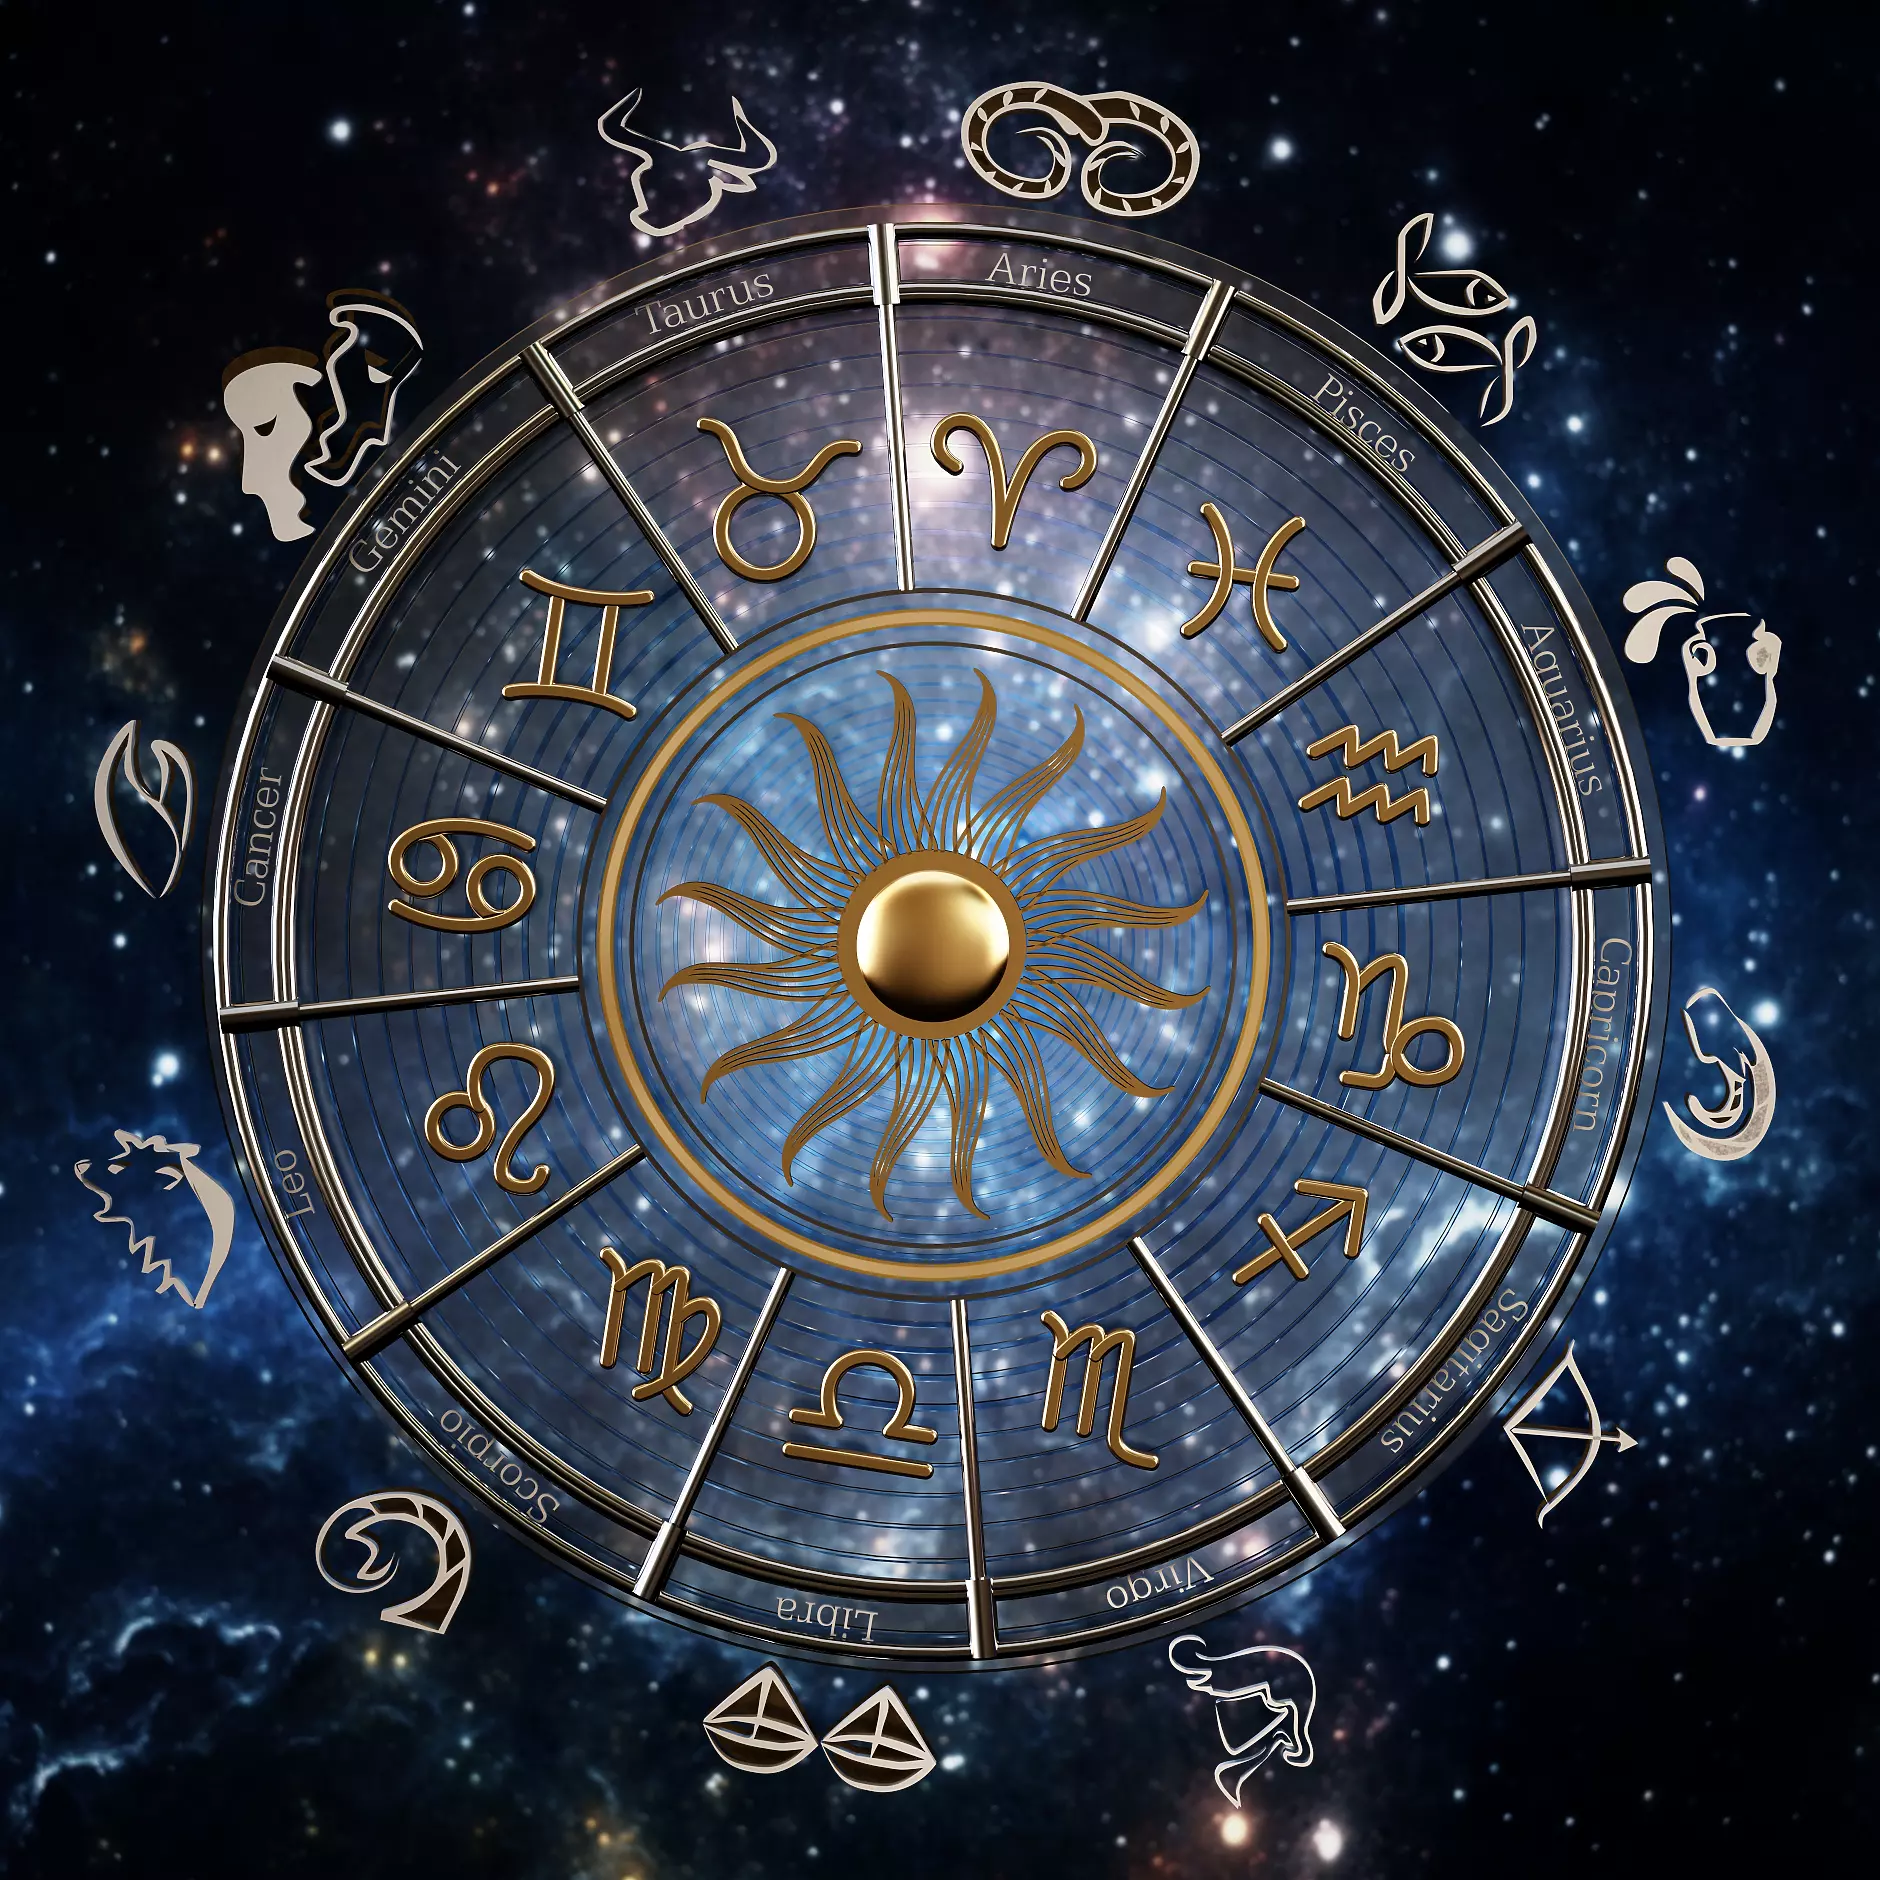 Седмичен хороскоп: Звездите за бизнеса от 28 ноември до 4 декември